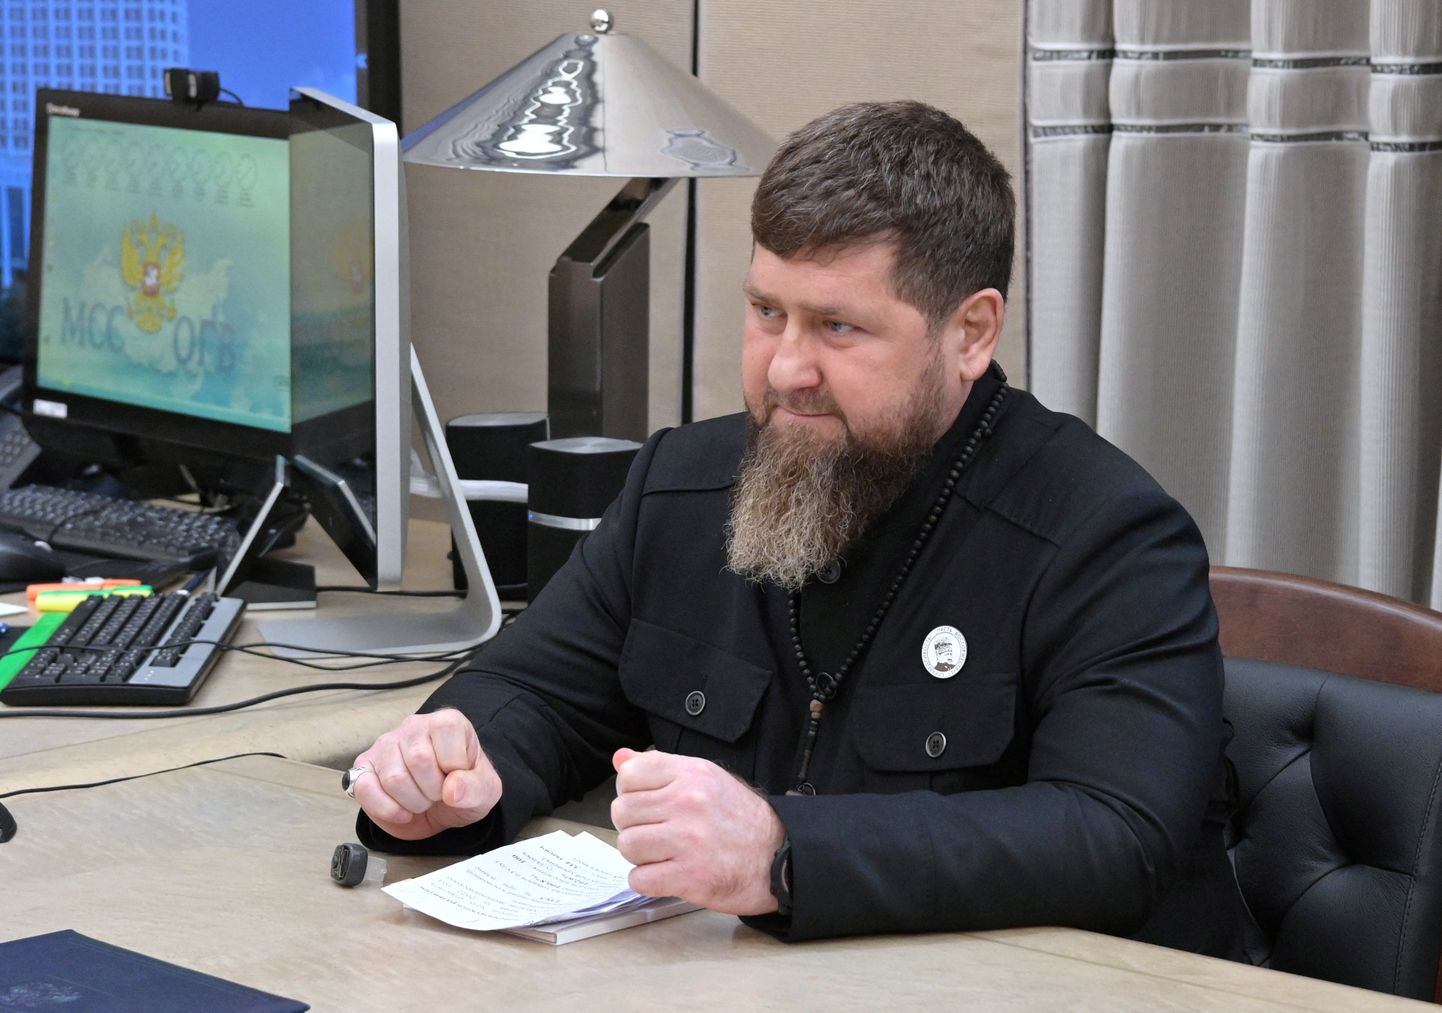 Venemaa Tšetšeeni Vabariigi juht Ramzan Kadõrov oli 27. aprillil 2023 visiidil Moskvas, kus ta kohtus Vene peaministri Mihhail Mišustiniga (ei ole fotol näha).